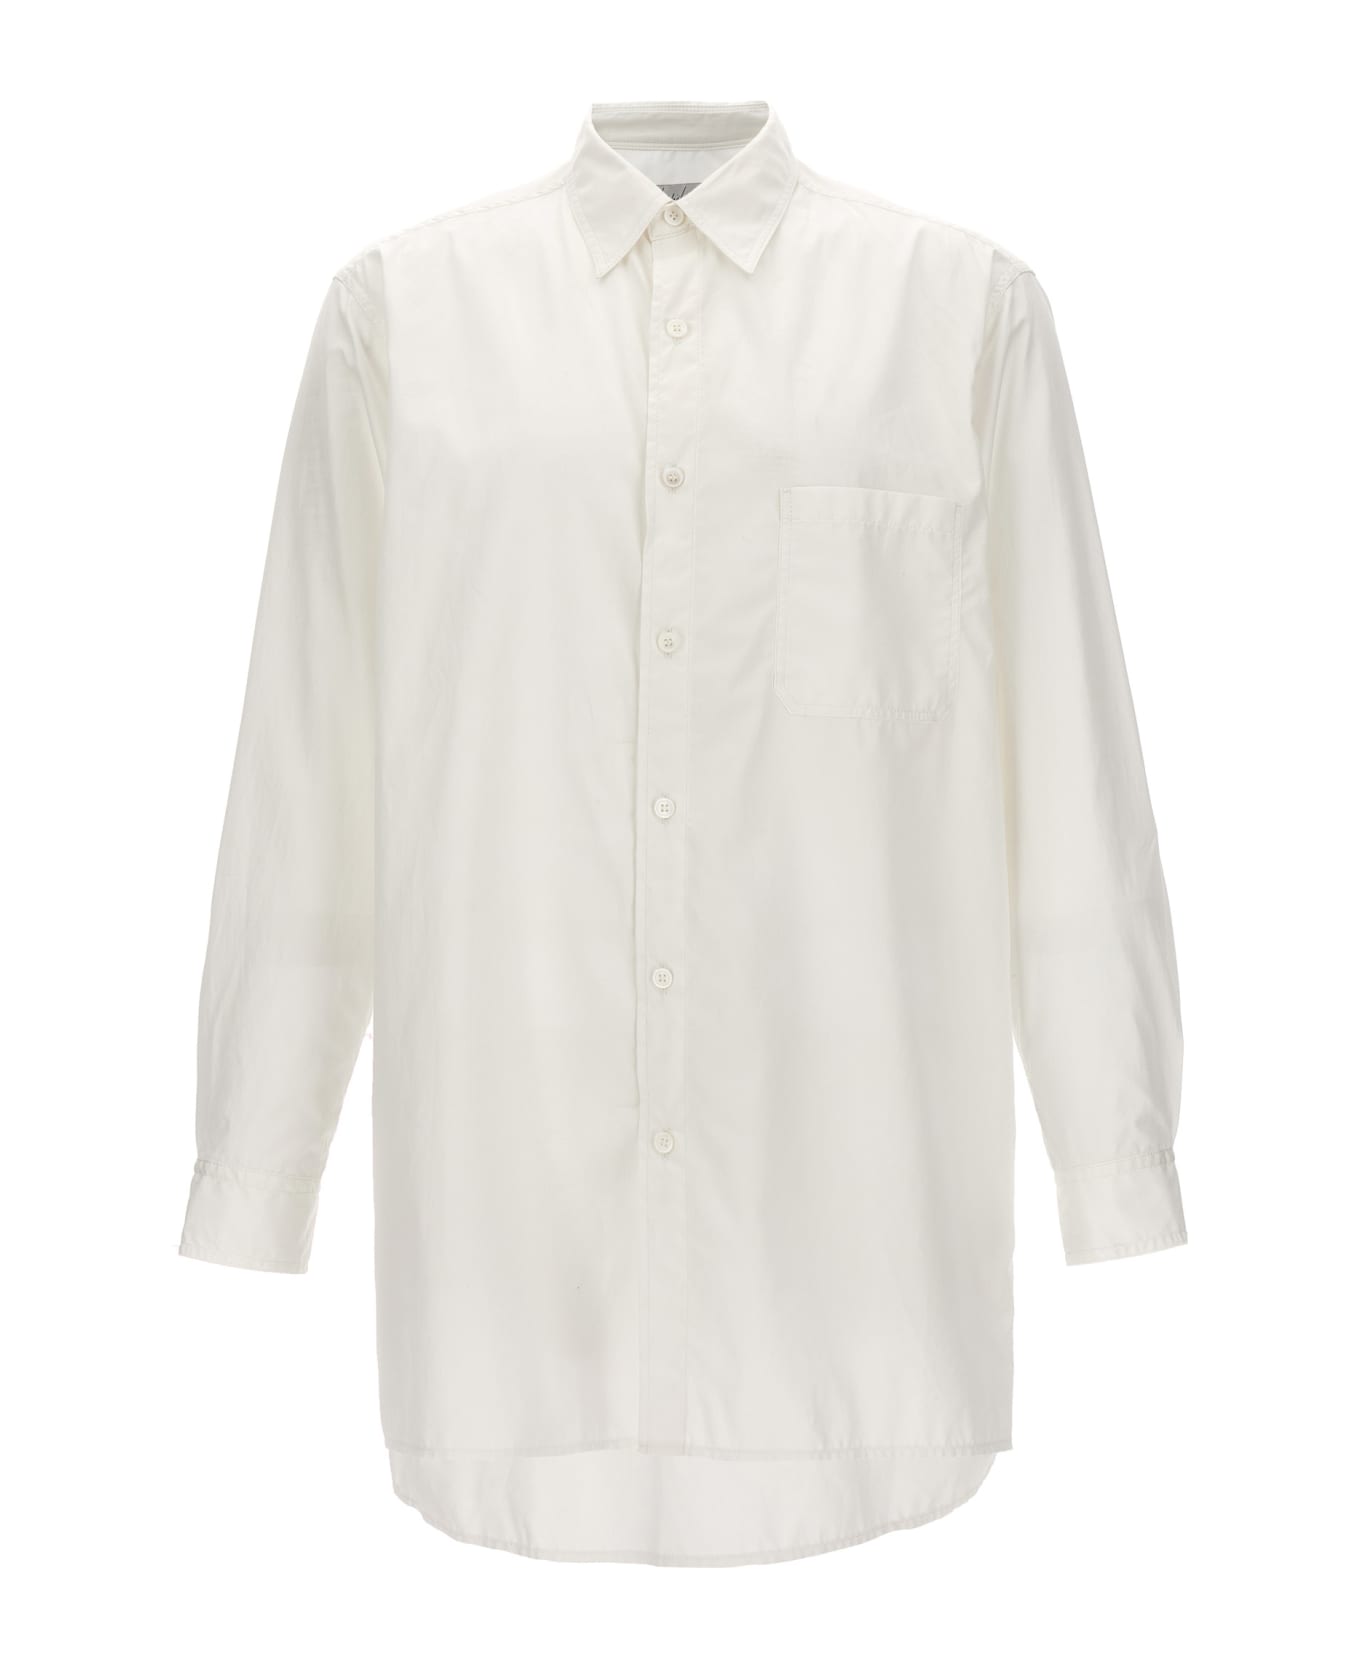 Yohji Yamamoto 'z-standard Big Chain Stitch' Shirt - White